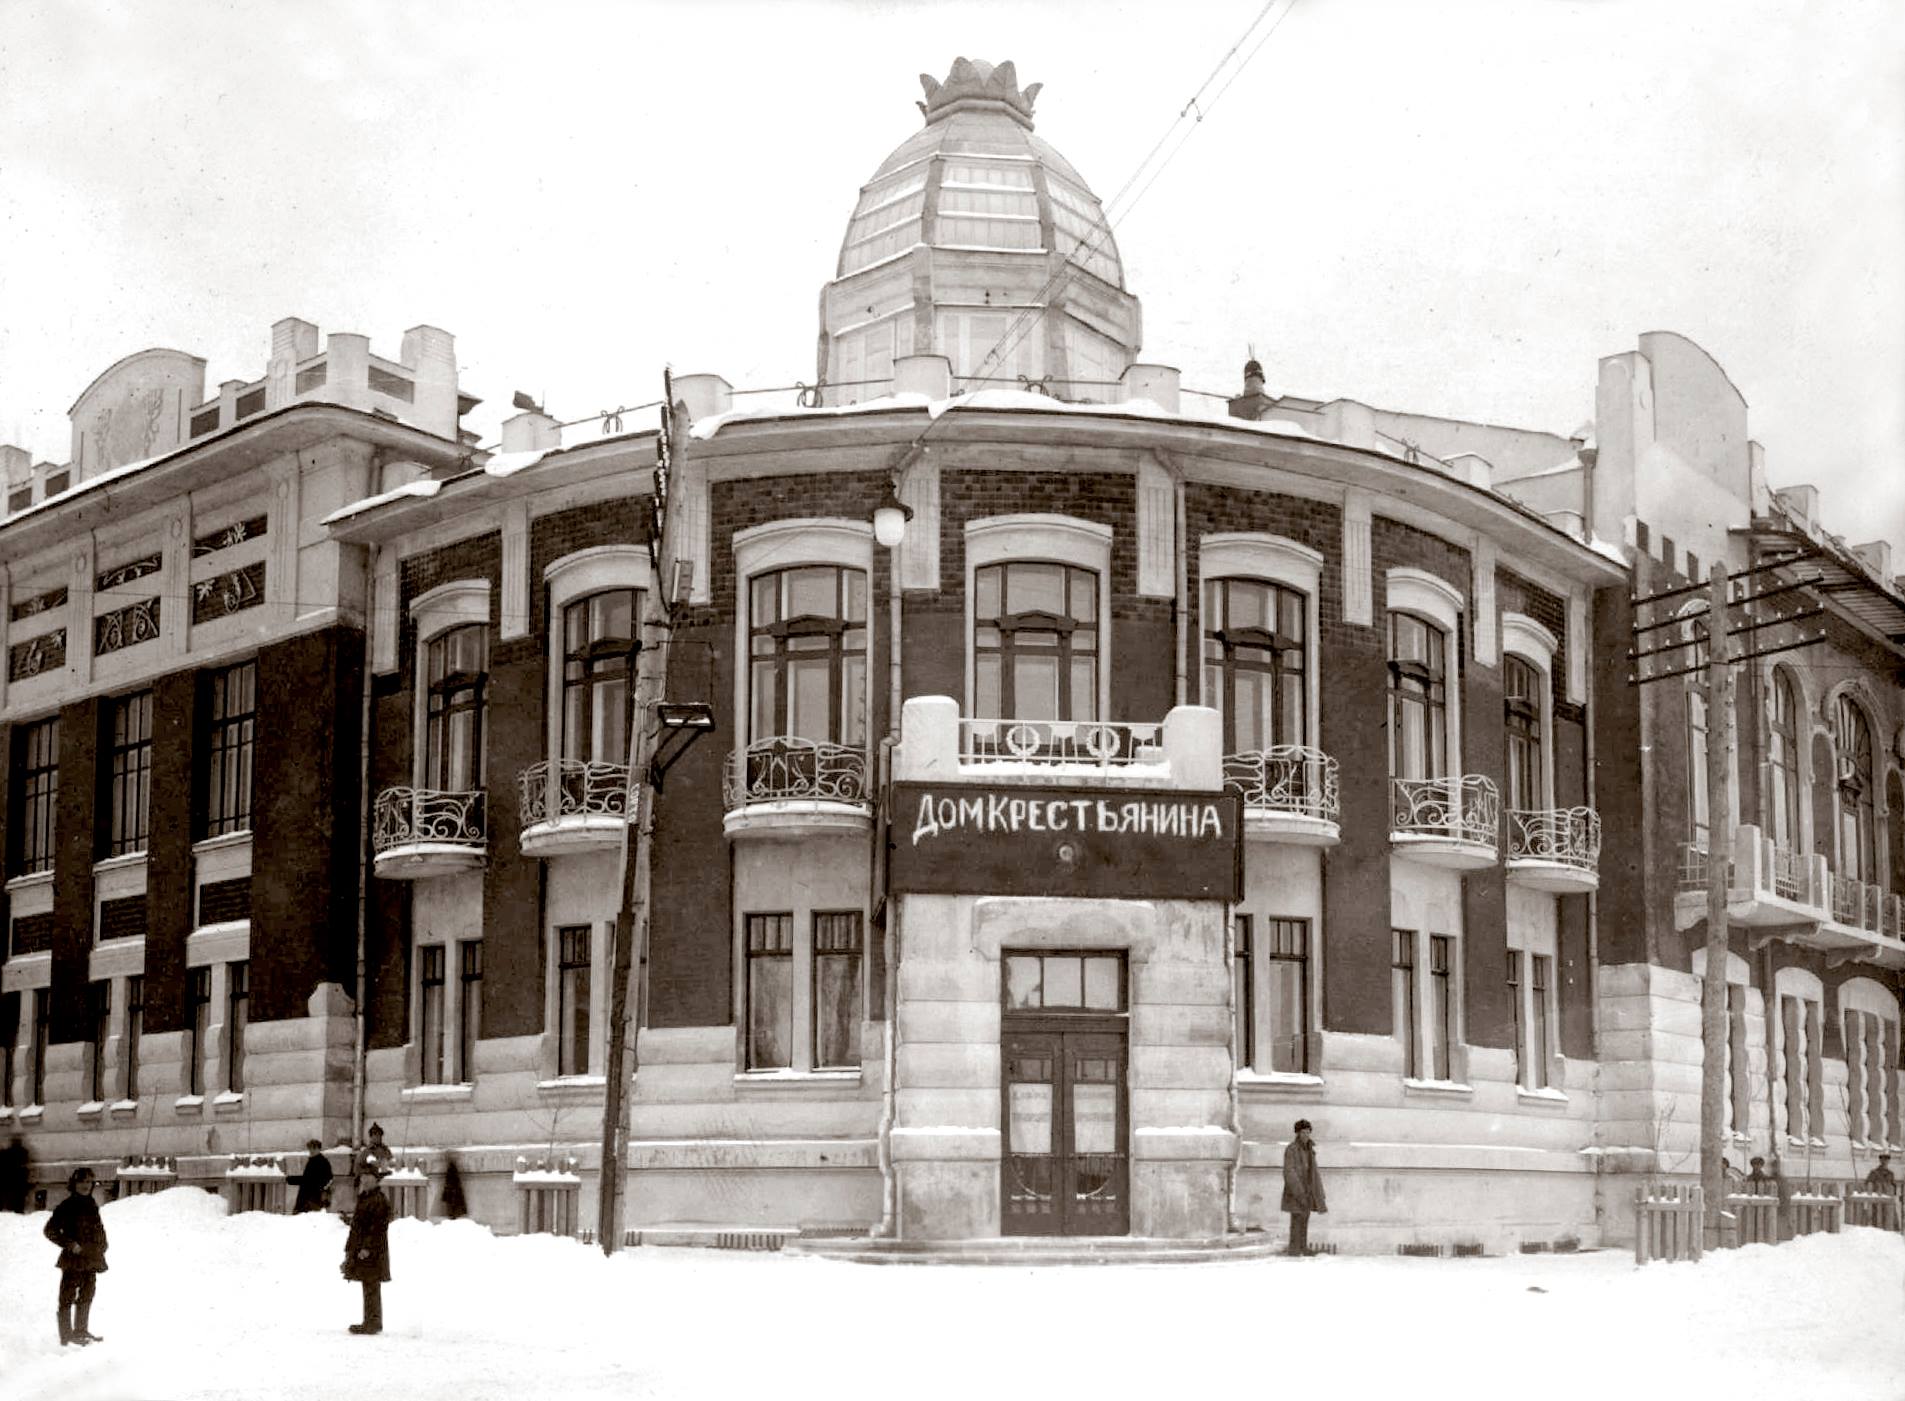 01 Дом Крестьянина, Самара, 1925